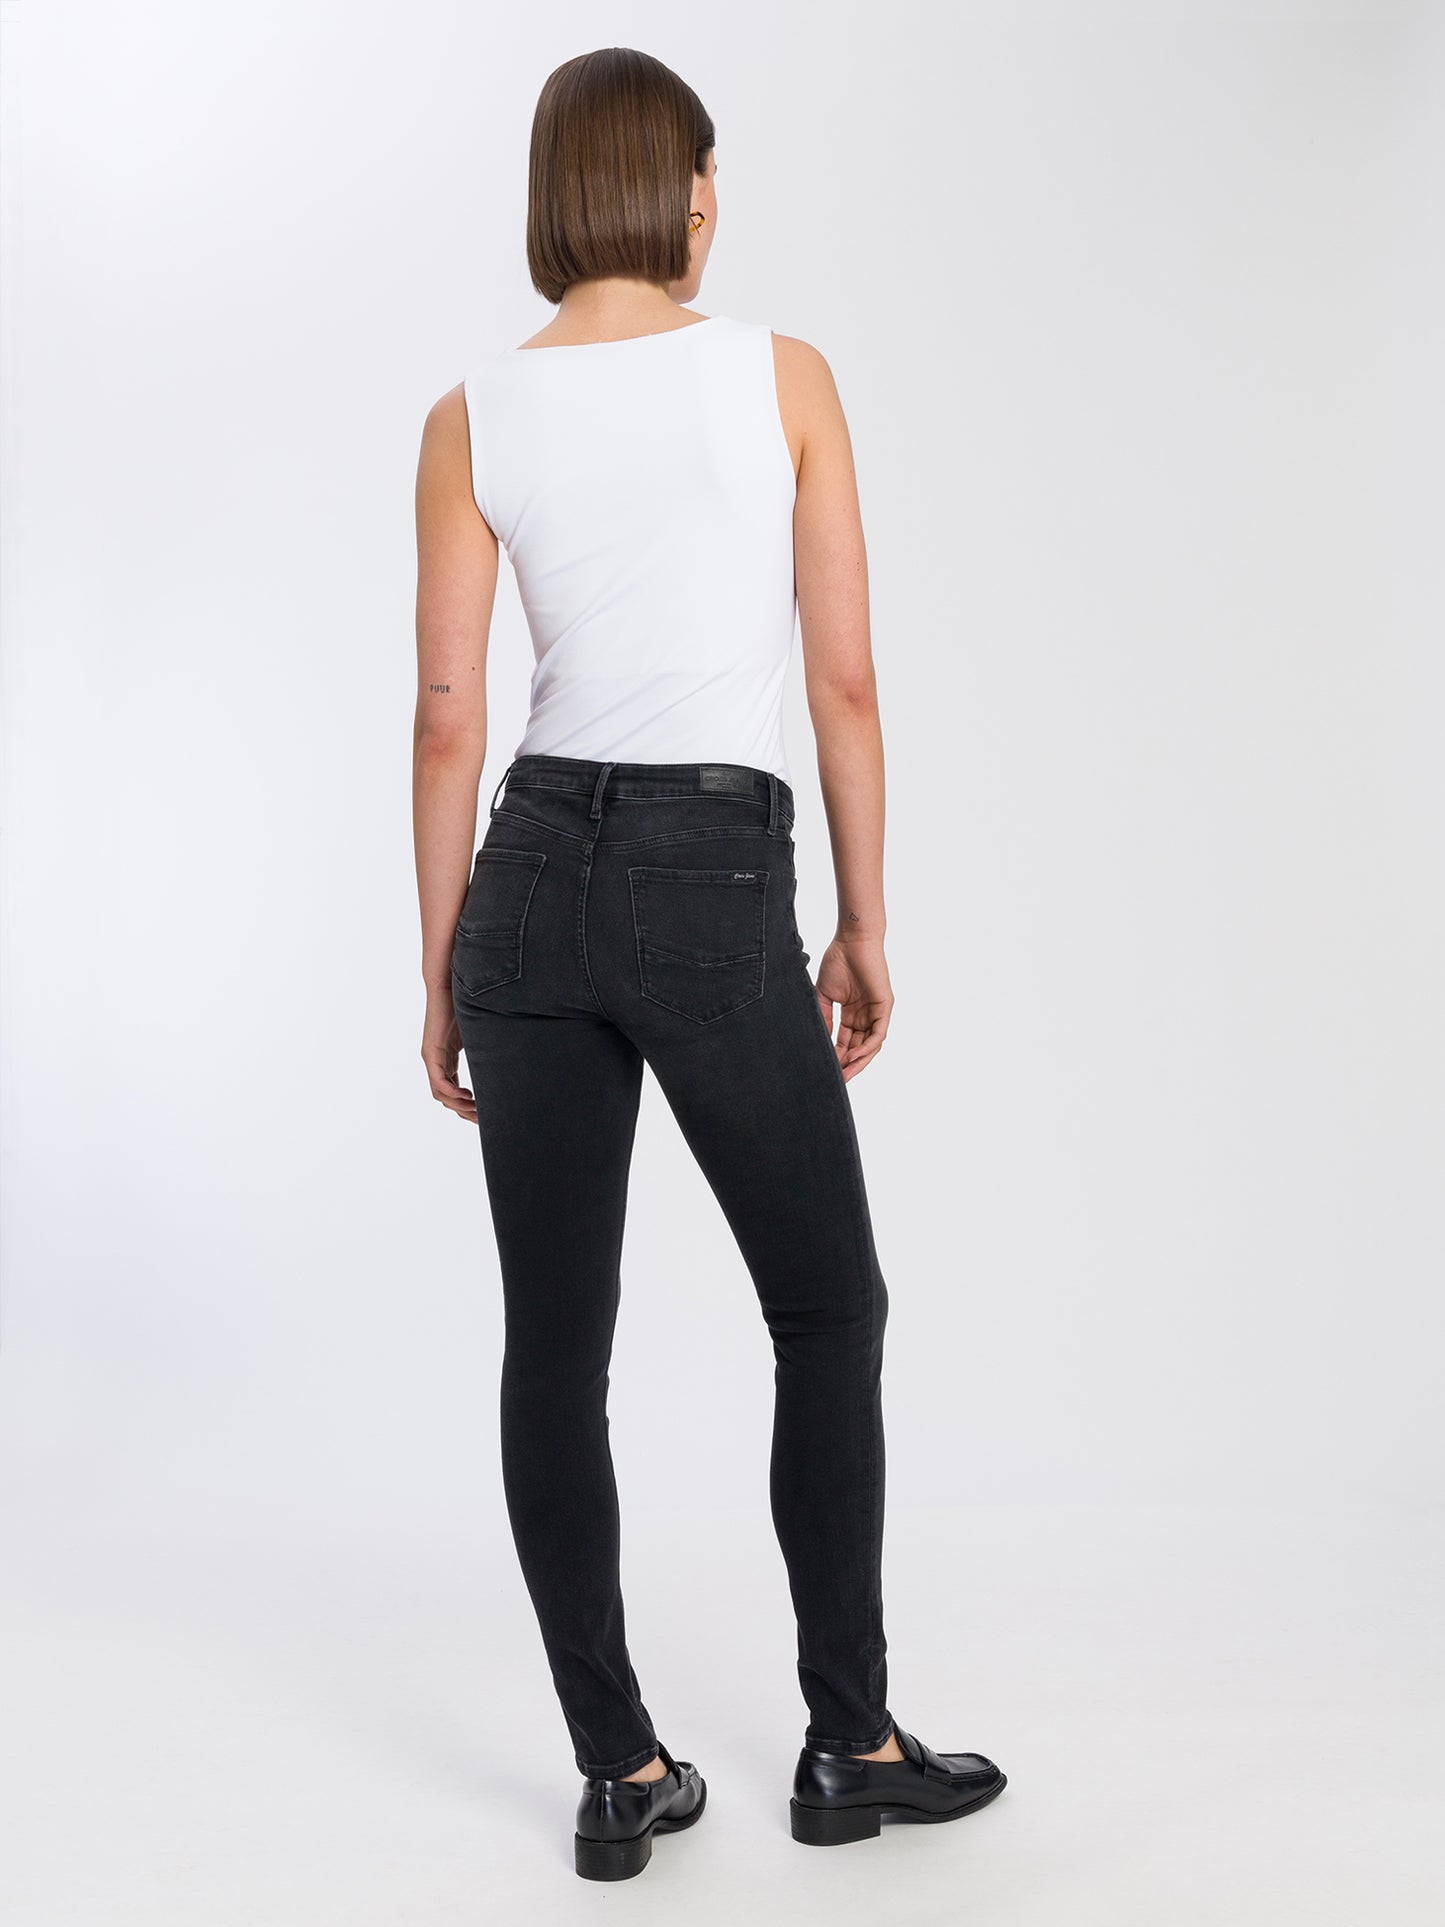 Alan women's skinny fit high waist jeans in grey